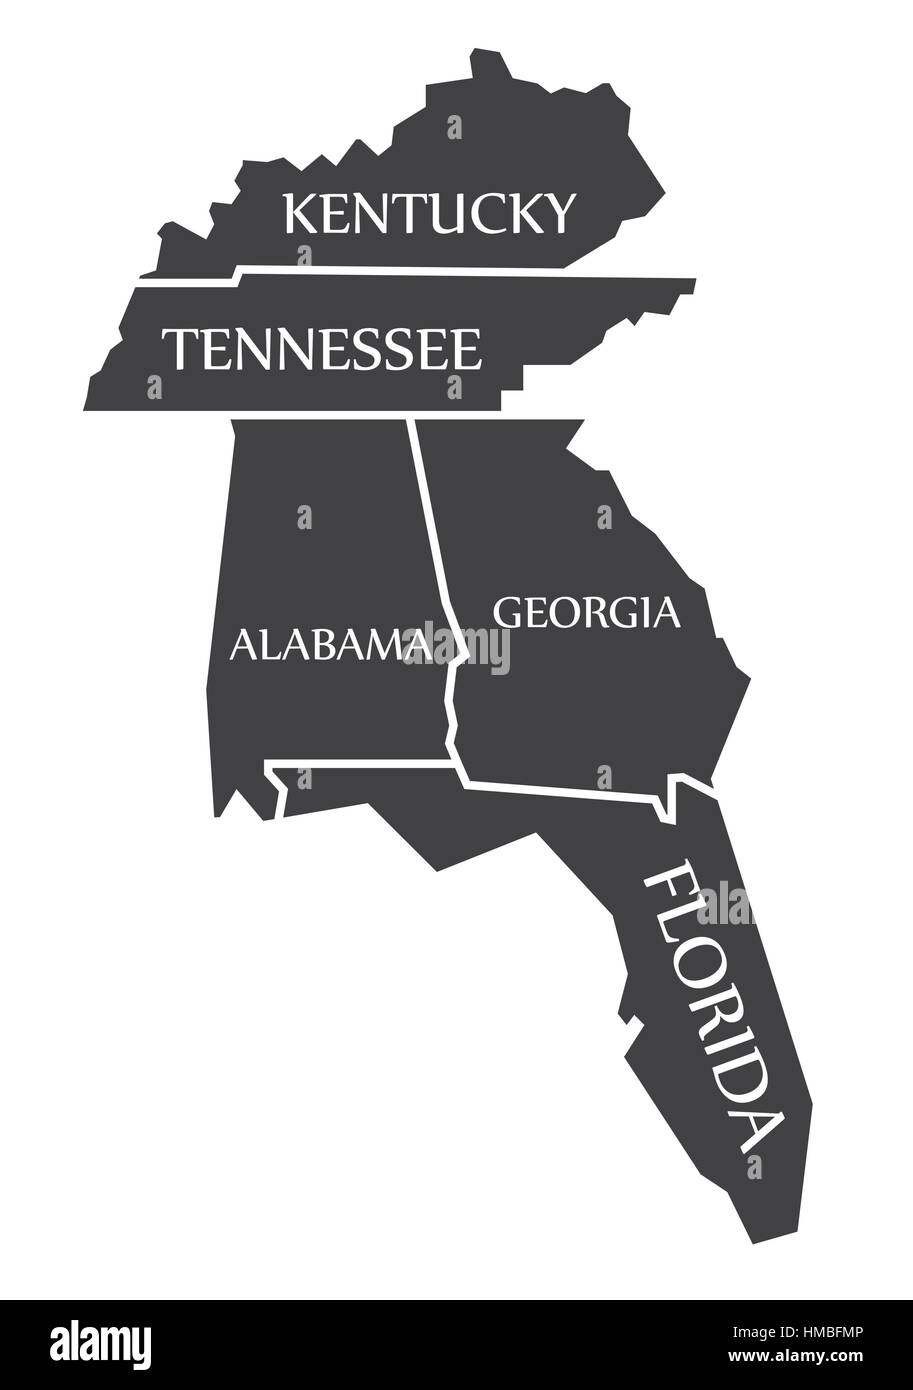 Kentucky - Tennessee - Alabama - Georgien - Florida Karte gekennzeichnet schwarz Abbildung Stock Vektor